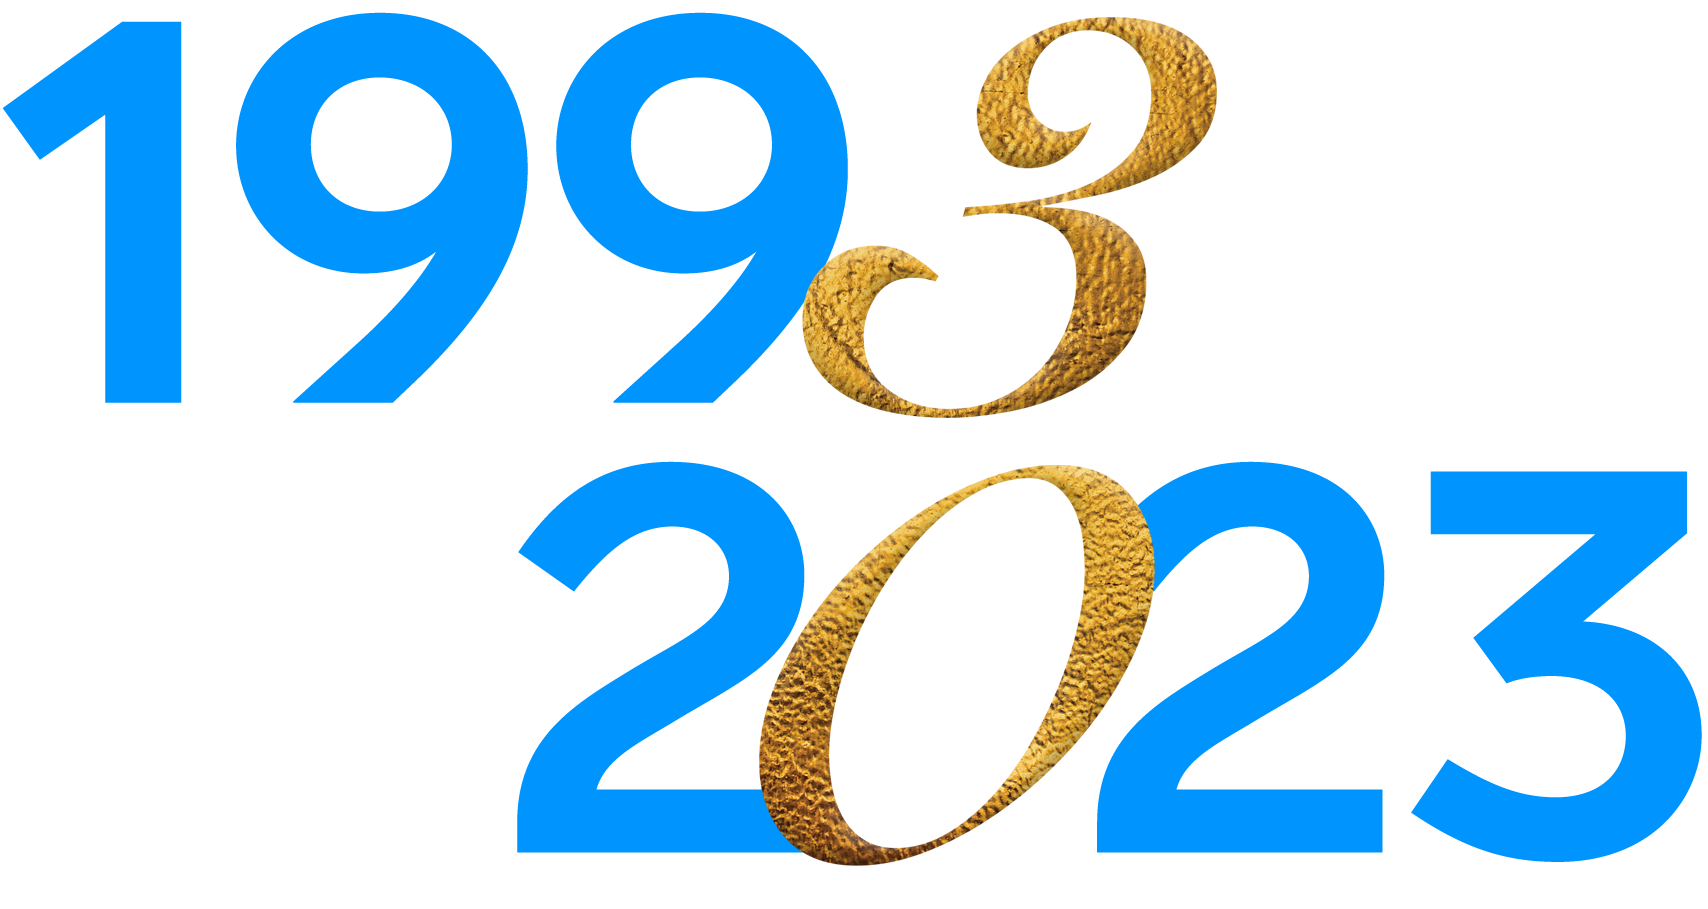 Robert Schuman Centre 30th anniversary logo